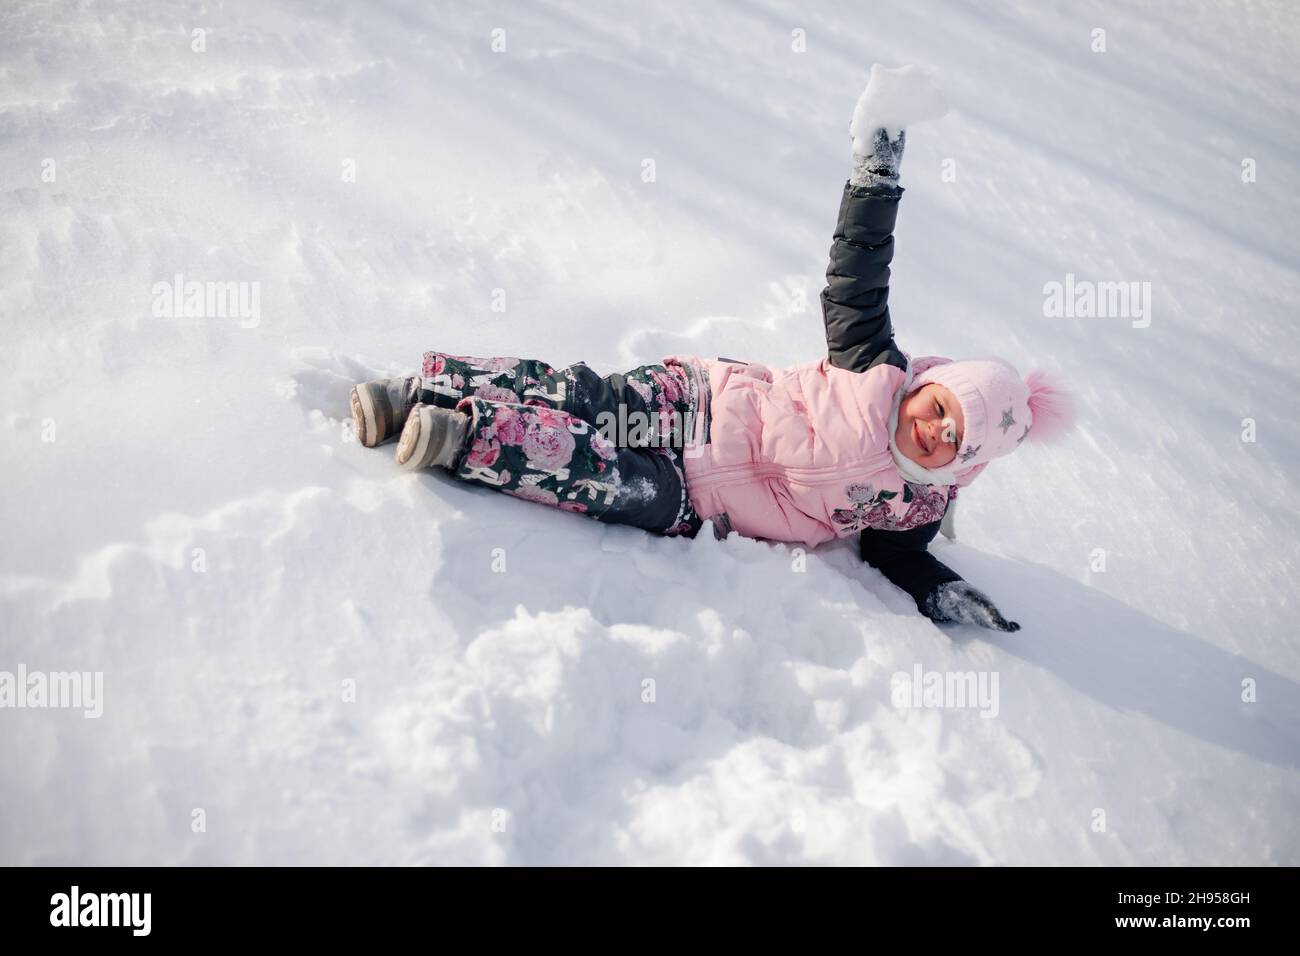 Il bambino gioca con la neve. La bambina ama passeggiare nella natura, divertirsi e cavalcare lo scivolo della neve senza slittino nella soleggiata giornata invernale Foto Stock